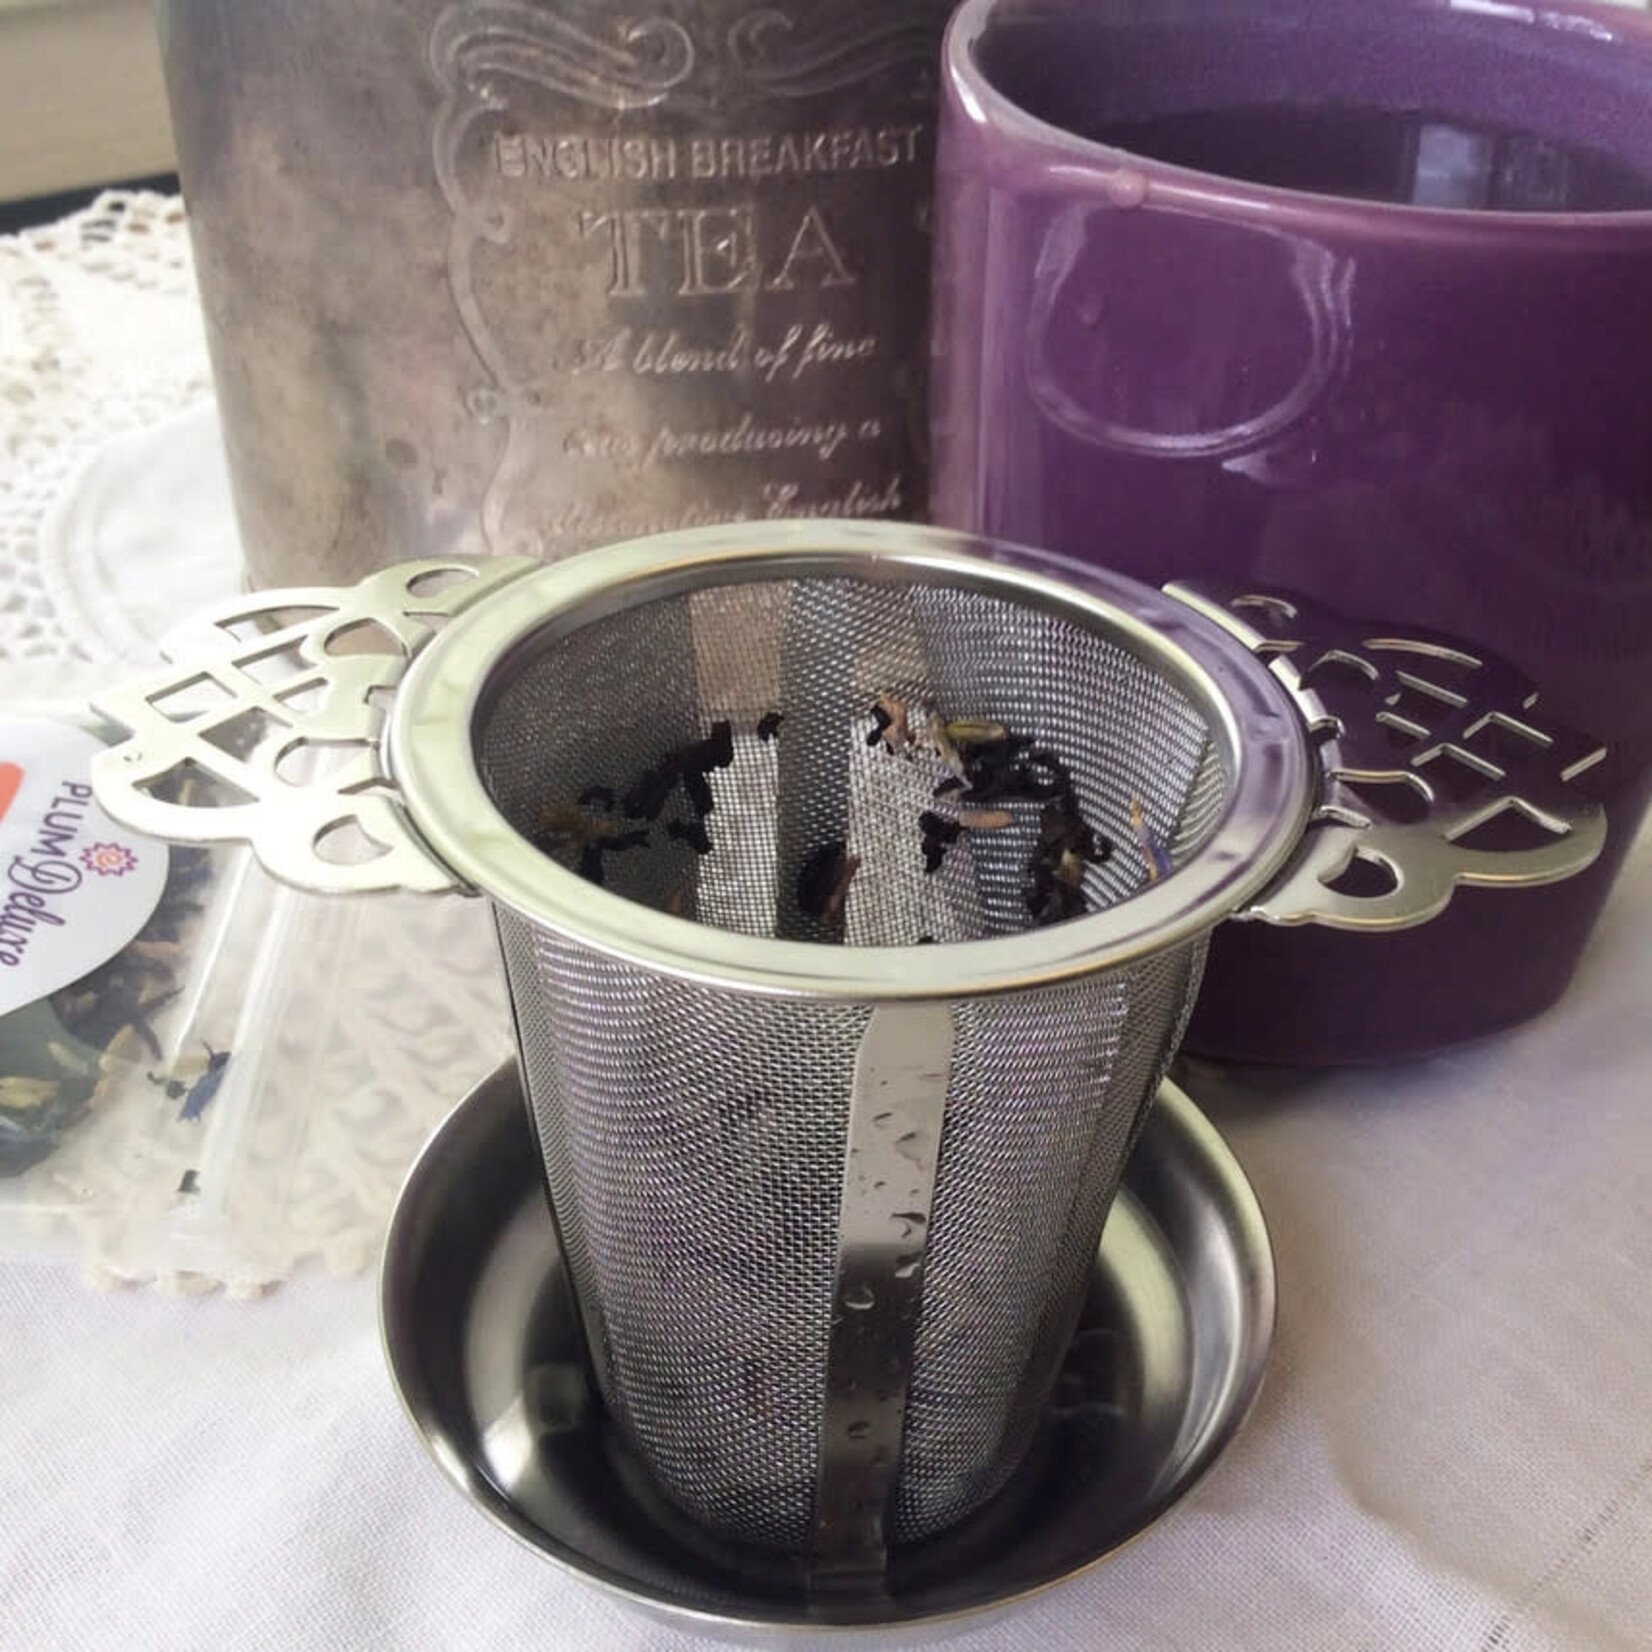 Plum Deluxe Tea Victorian Mesh Tea Infuser